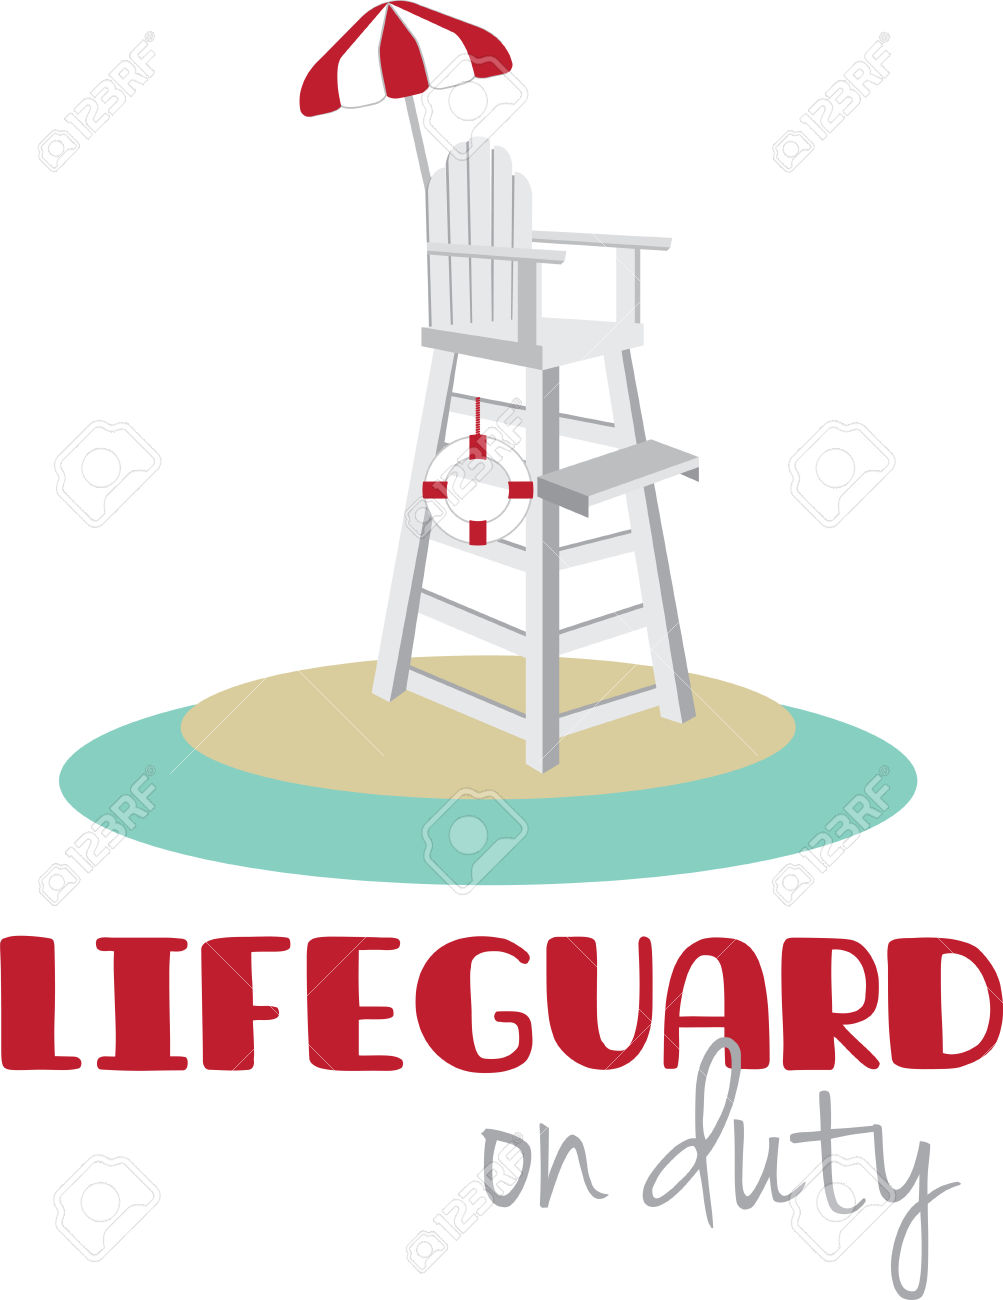 Lifeguard clipart beach lifeguard. Cartoon free download best